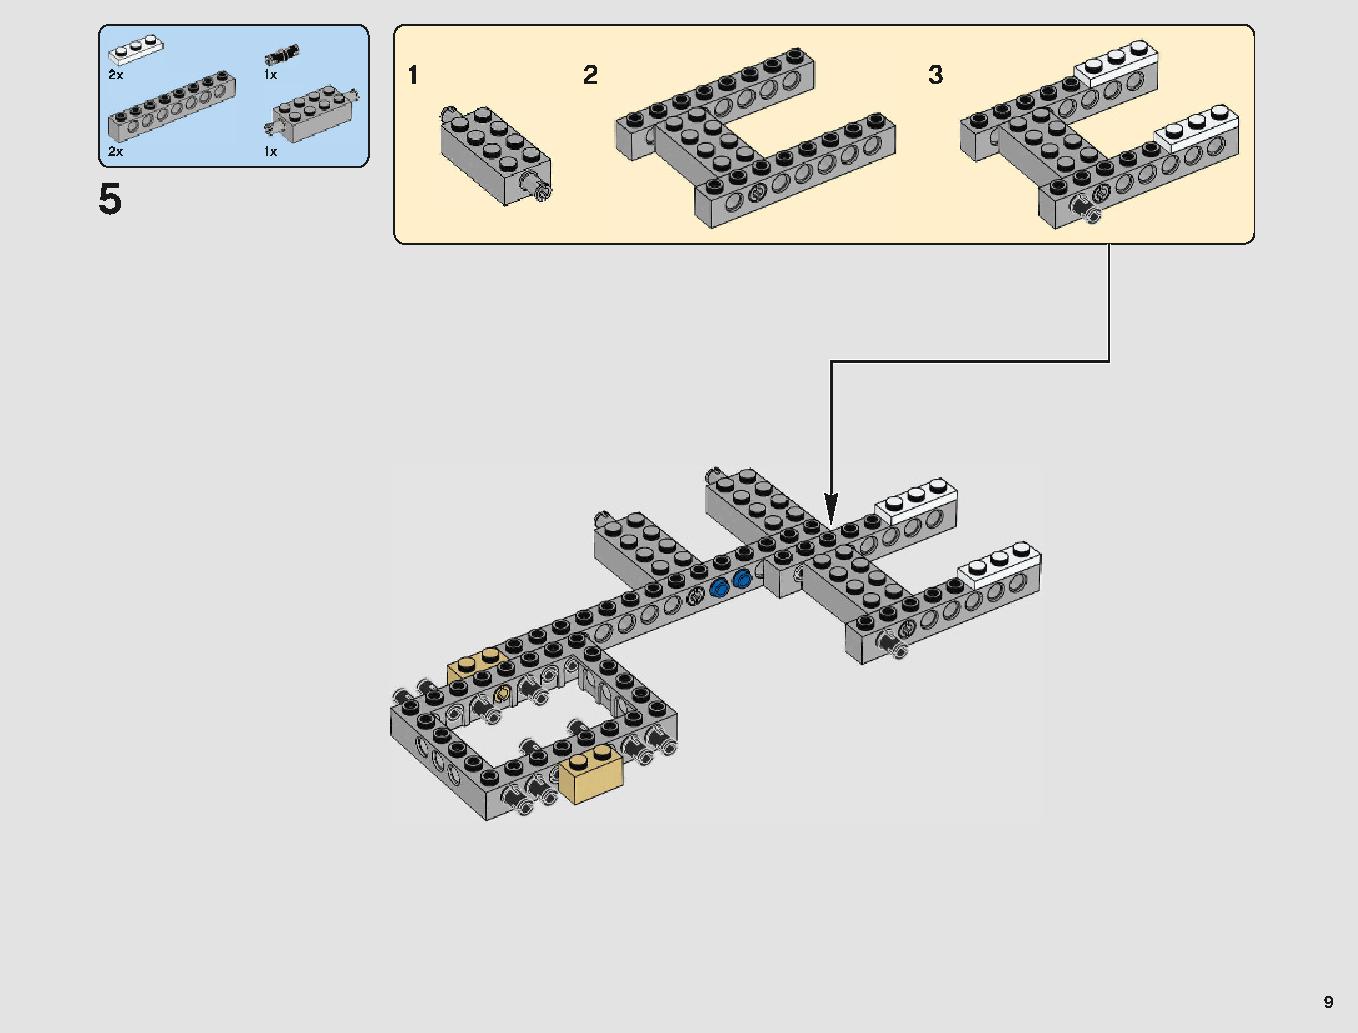 ミレニアム・ファルコン 75212 レゴの商品情報 レゴの説明書・組立方法 9 page